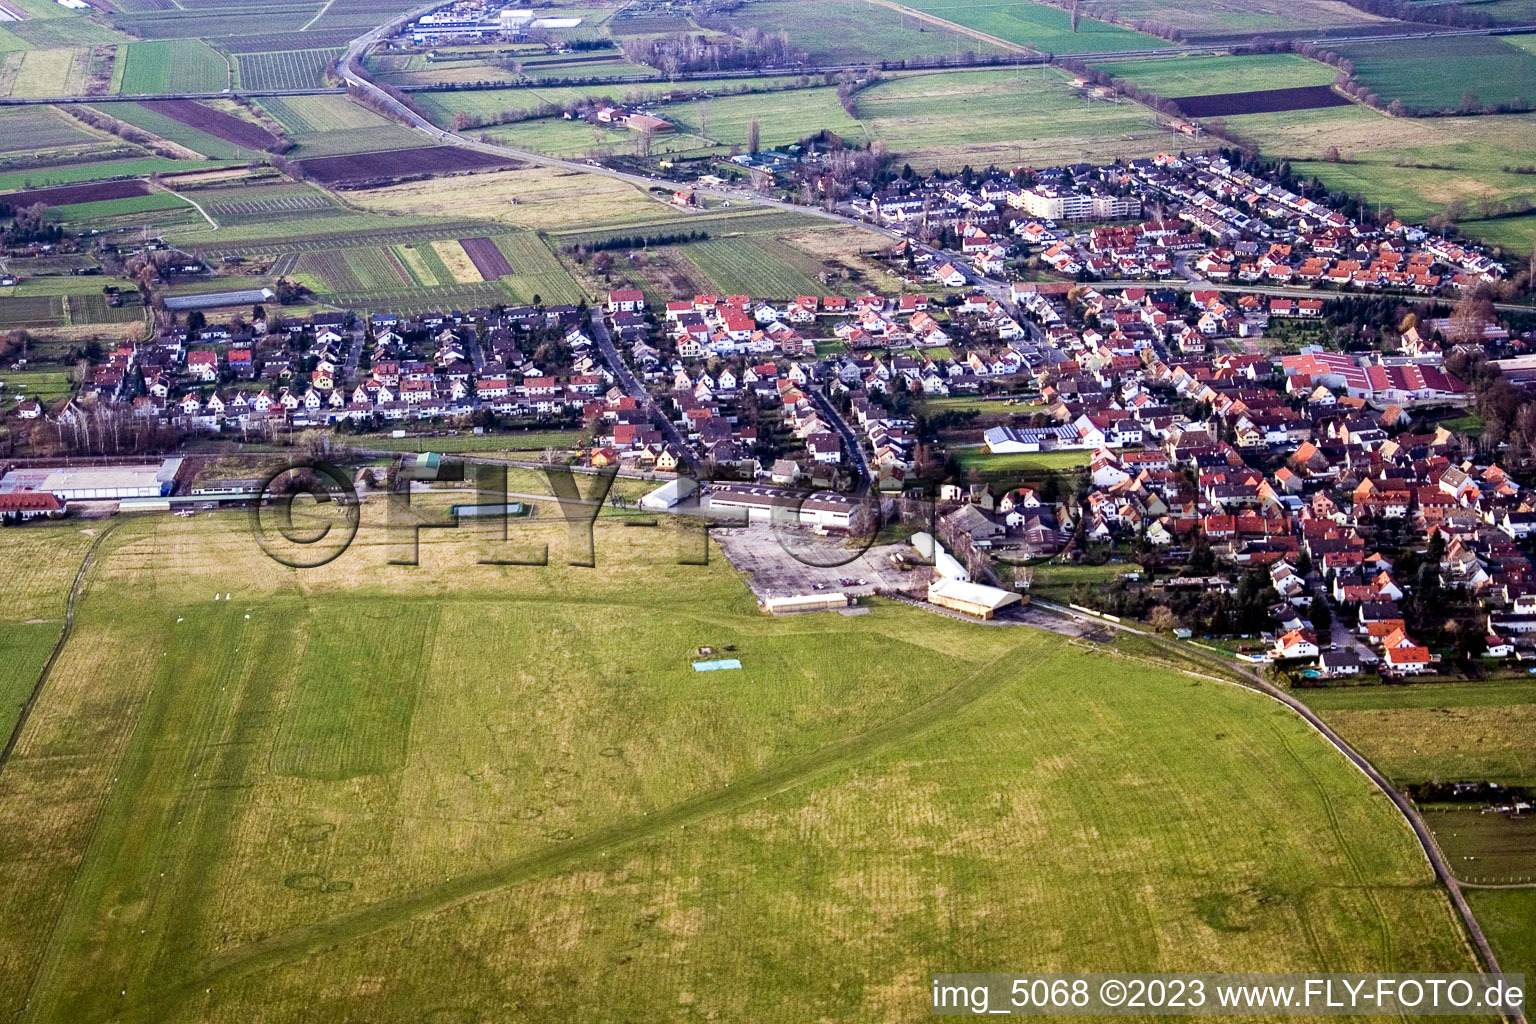 Luftbild von Lachen-Speyerdorf, Flugplatz in Neustadt an der Weinstraße im Bundesland Rheinland-Pfalz, Deutschland